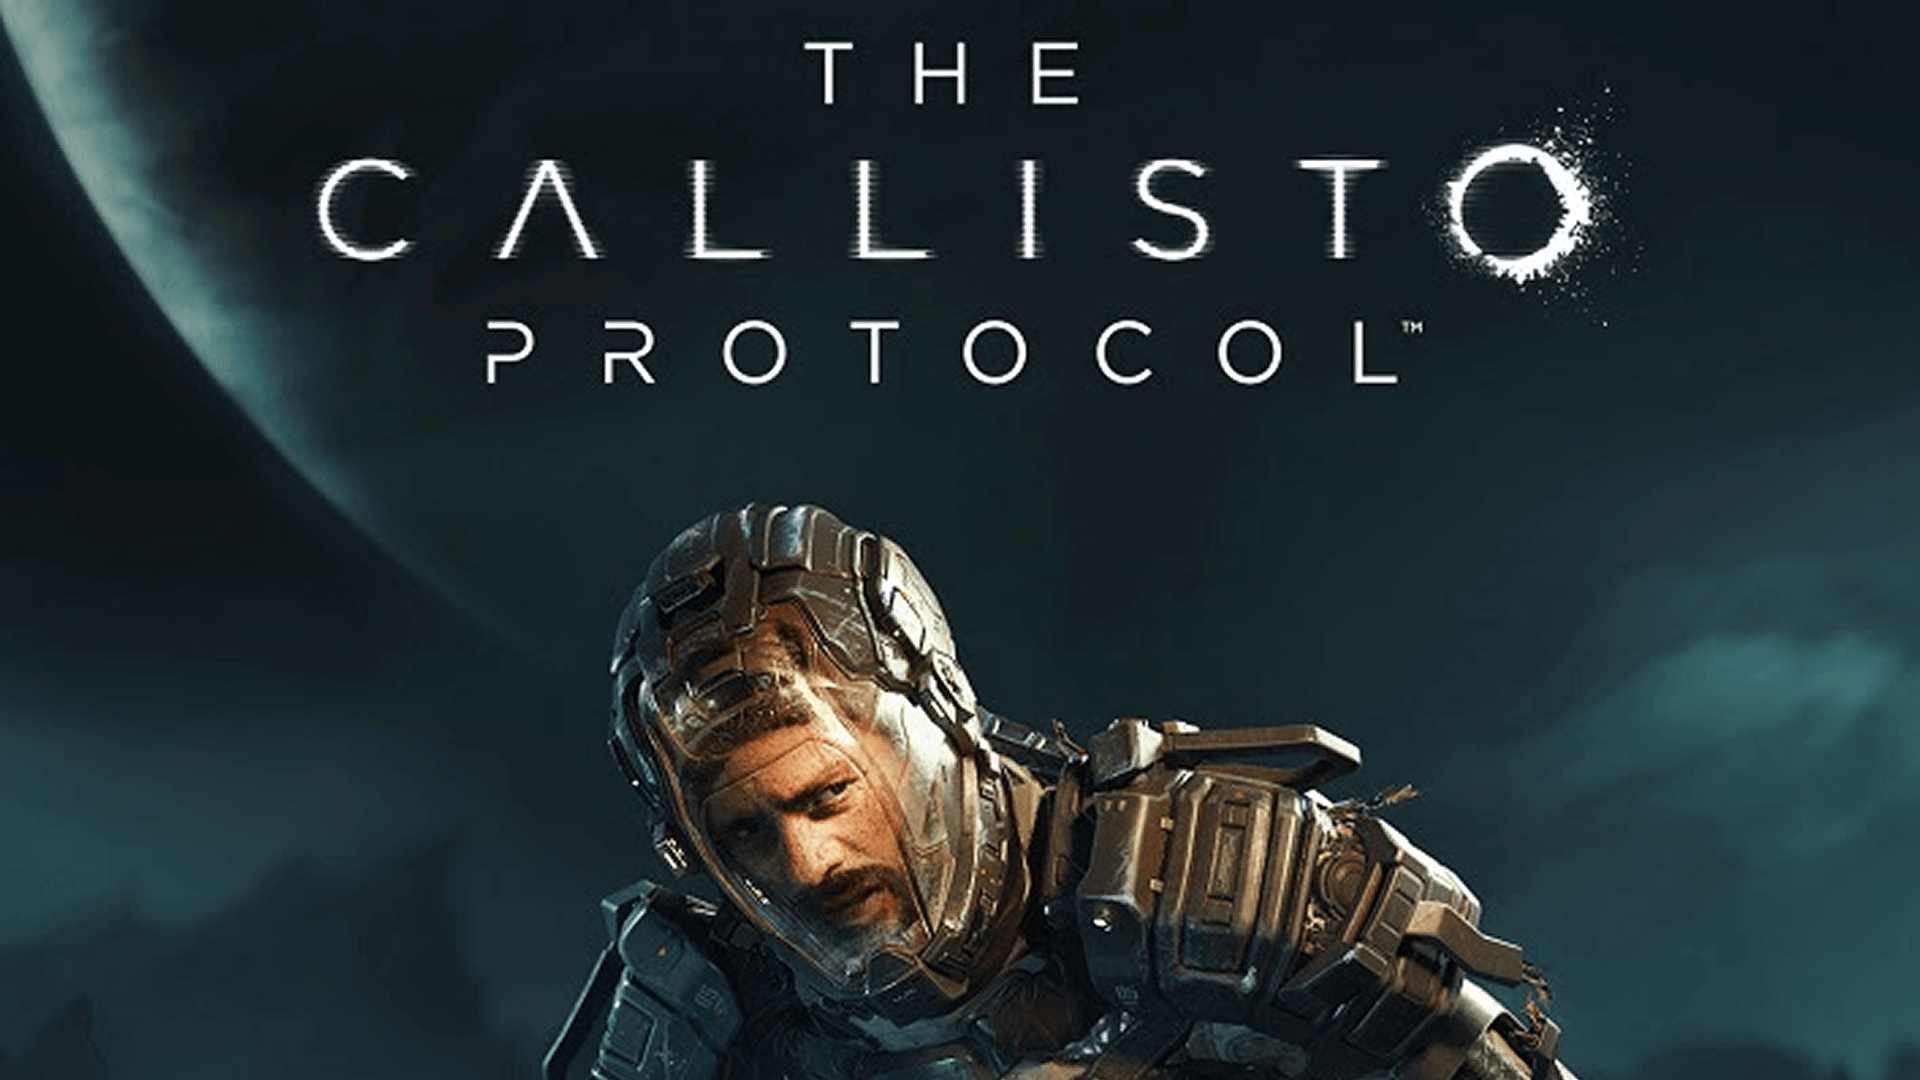 The Callisto Protocol - Guia de Troféus e Conquistas - Saiu na Plus agora,  vão jogar? : r/CafeComPlatina